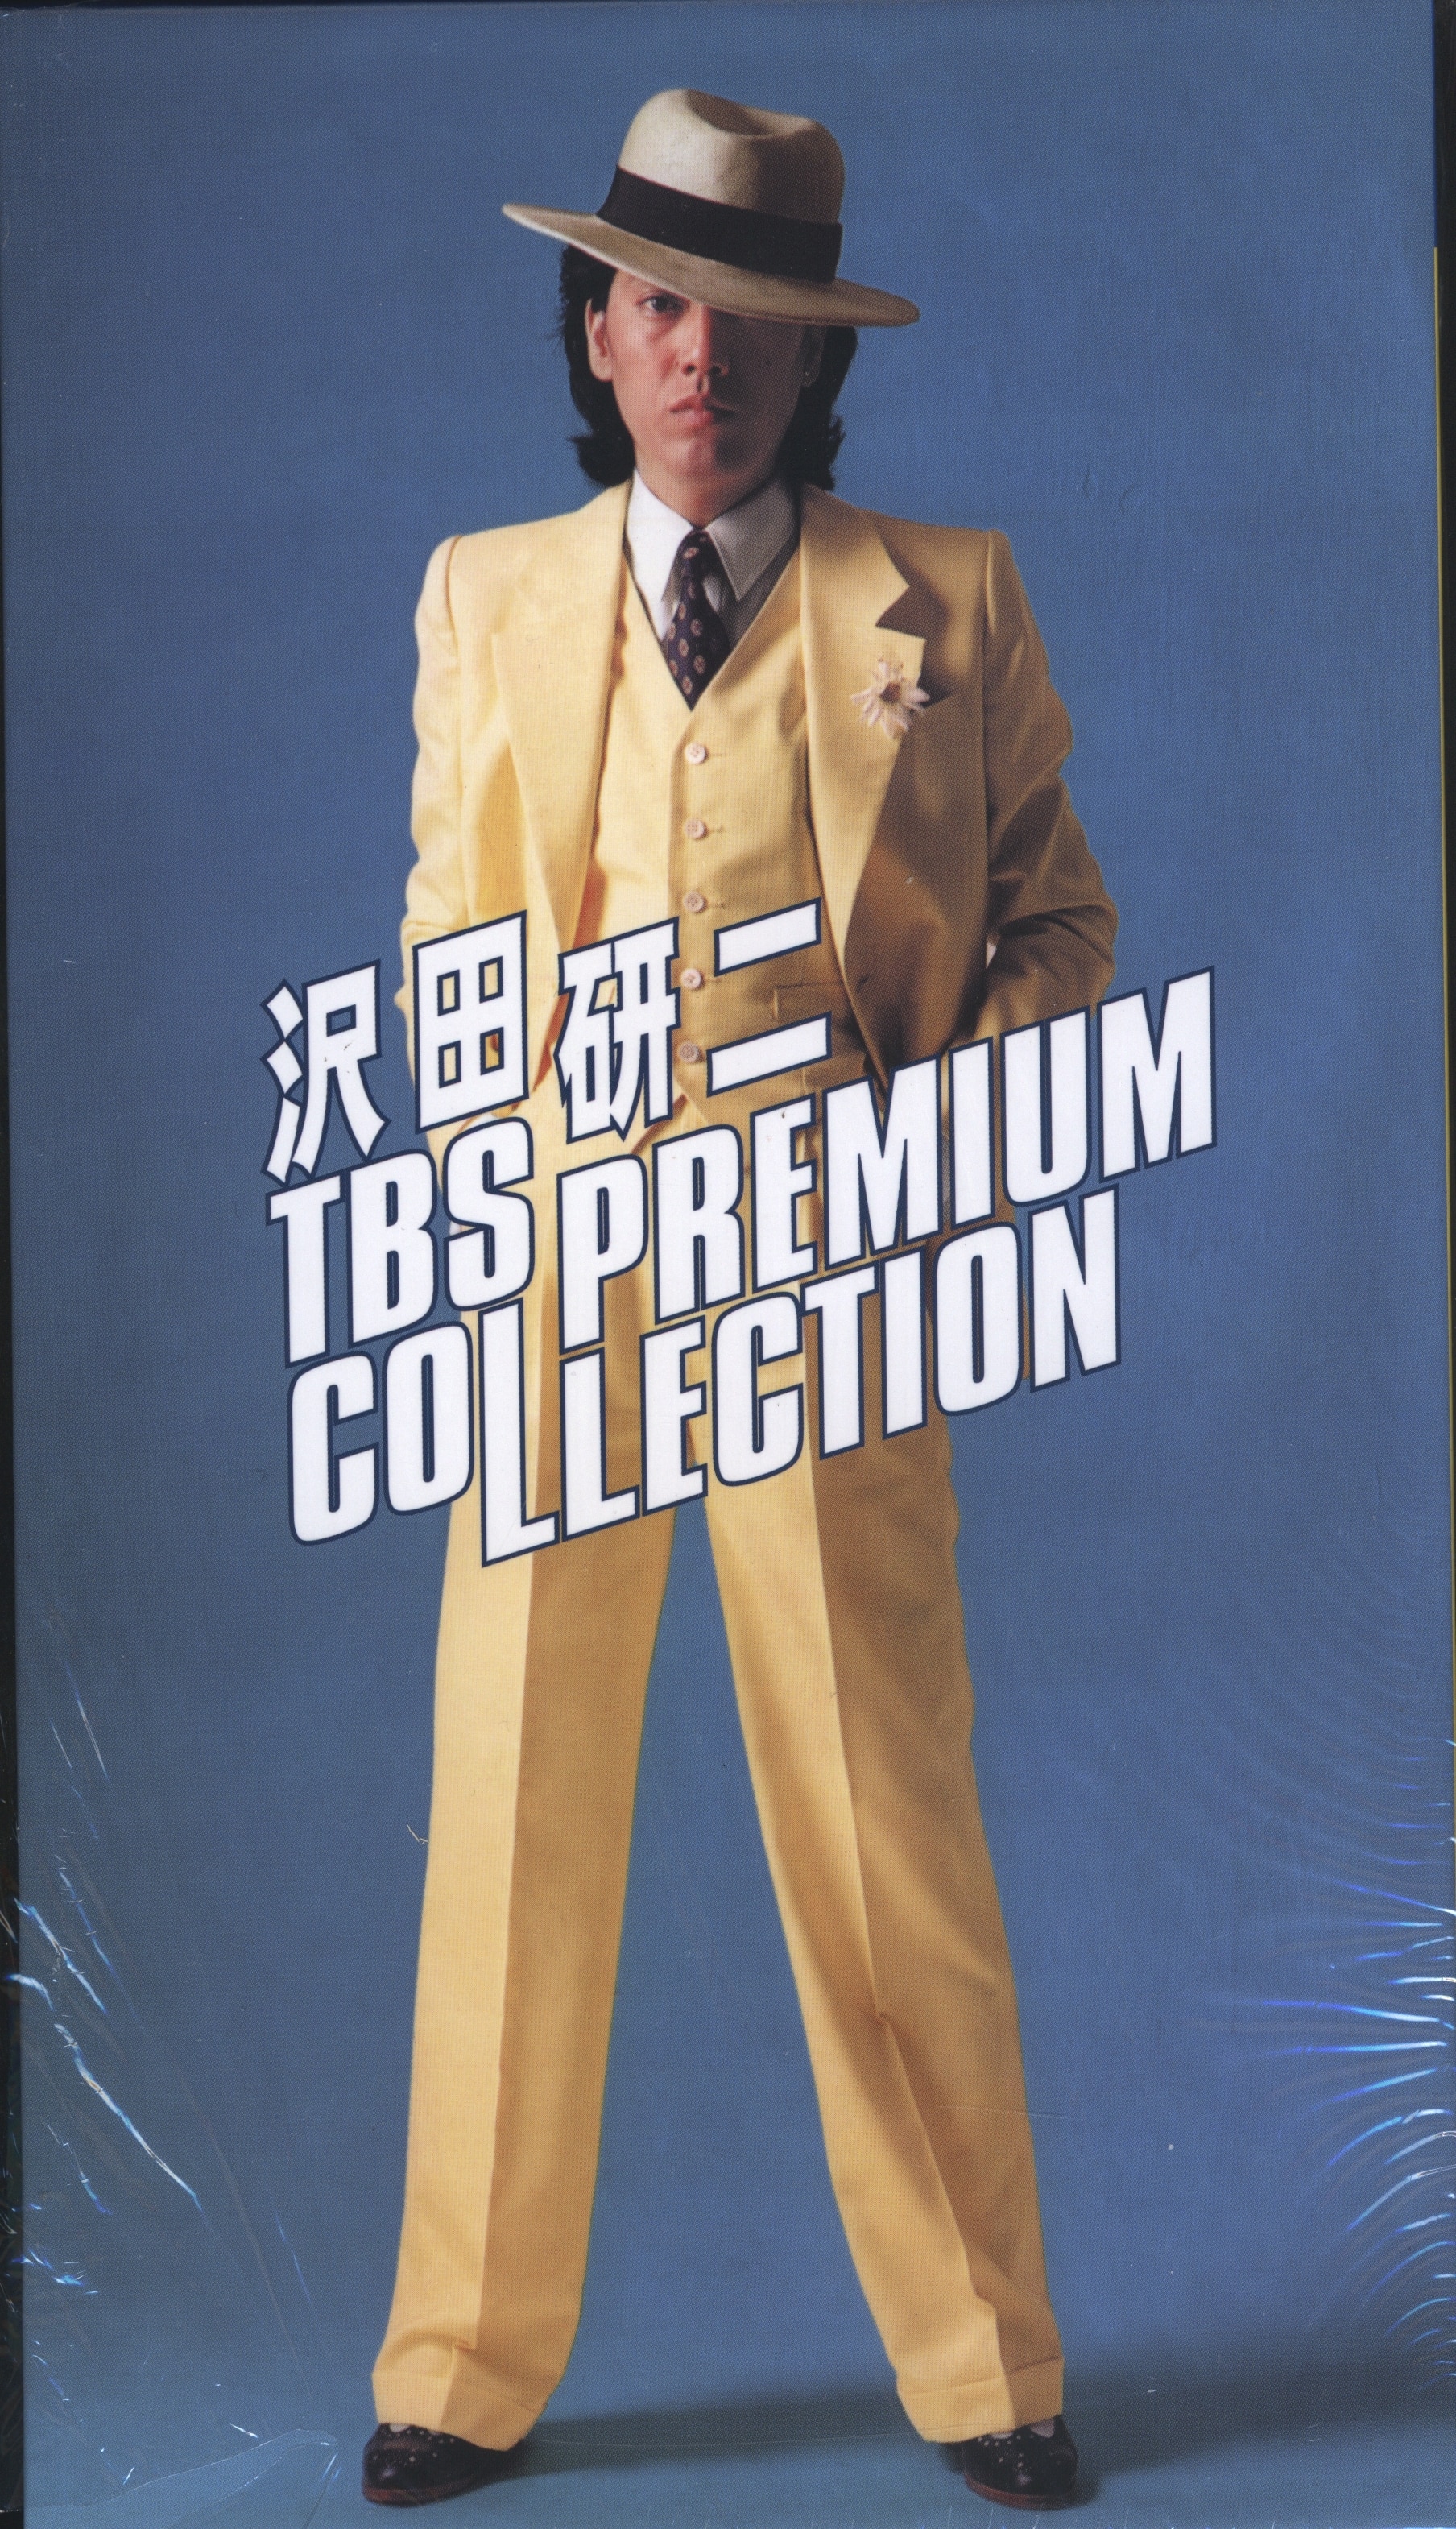 沢田研二 TBS PREMIUM COLLECTION [DVD] - 日本映画